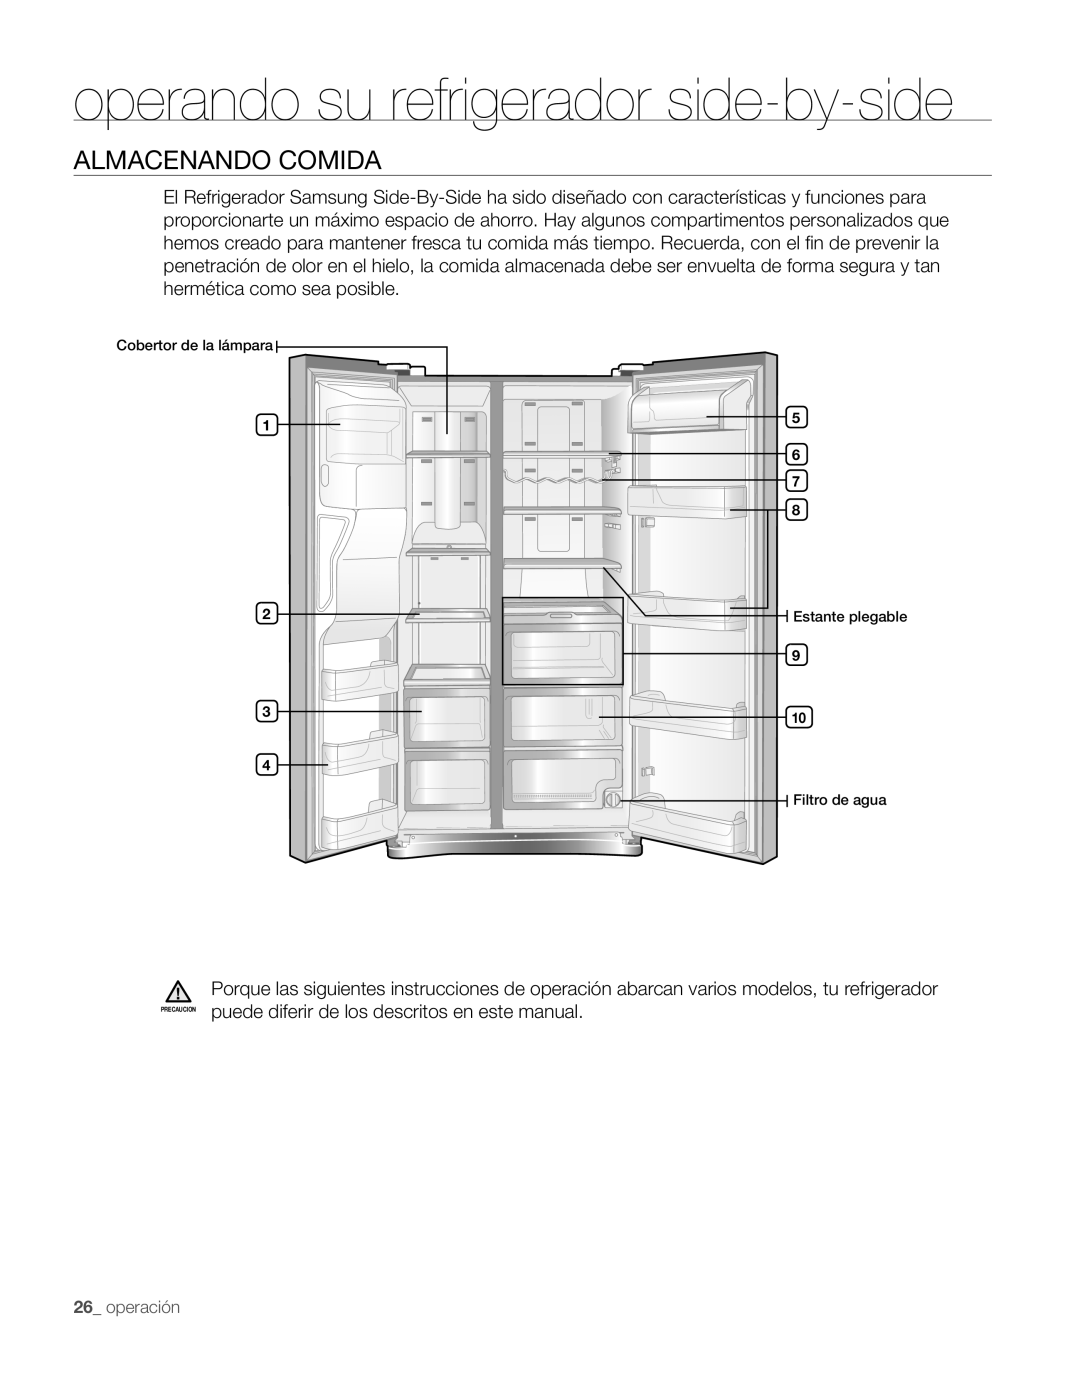 Samsung RS267TDPN user manual Almacenando Comida, operando su refrigerador side-by-side, operación 